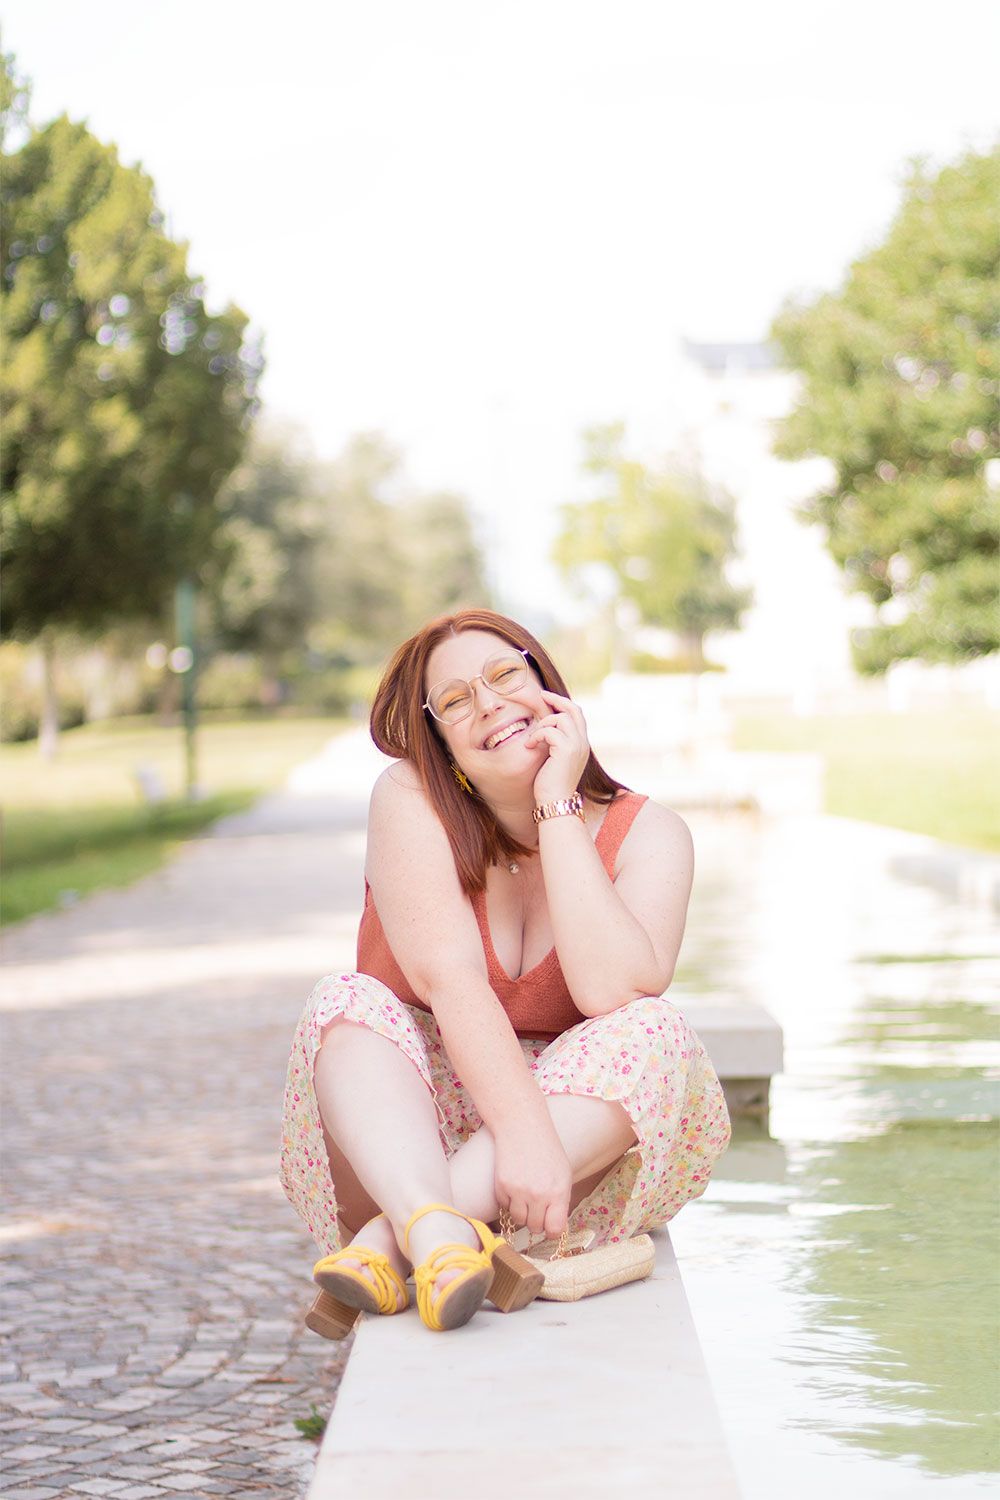 Assise sur le bord d'une fontaine en jupe à fleurs et sandales colorées